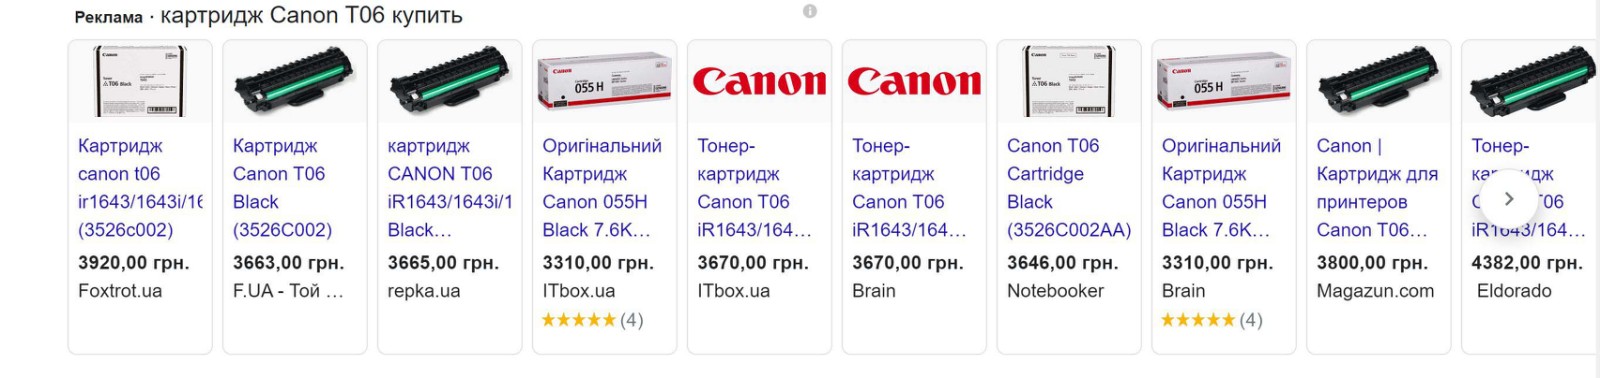 Стоимость картриджа Canon T06 на различных сайтах